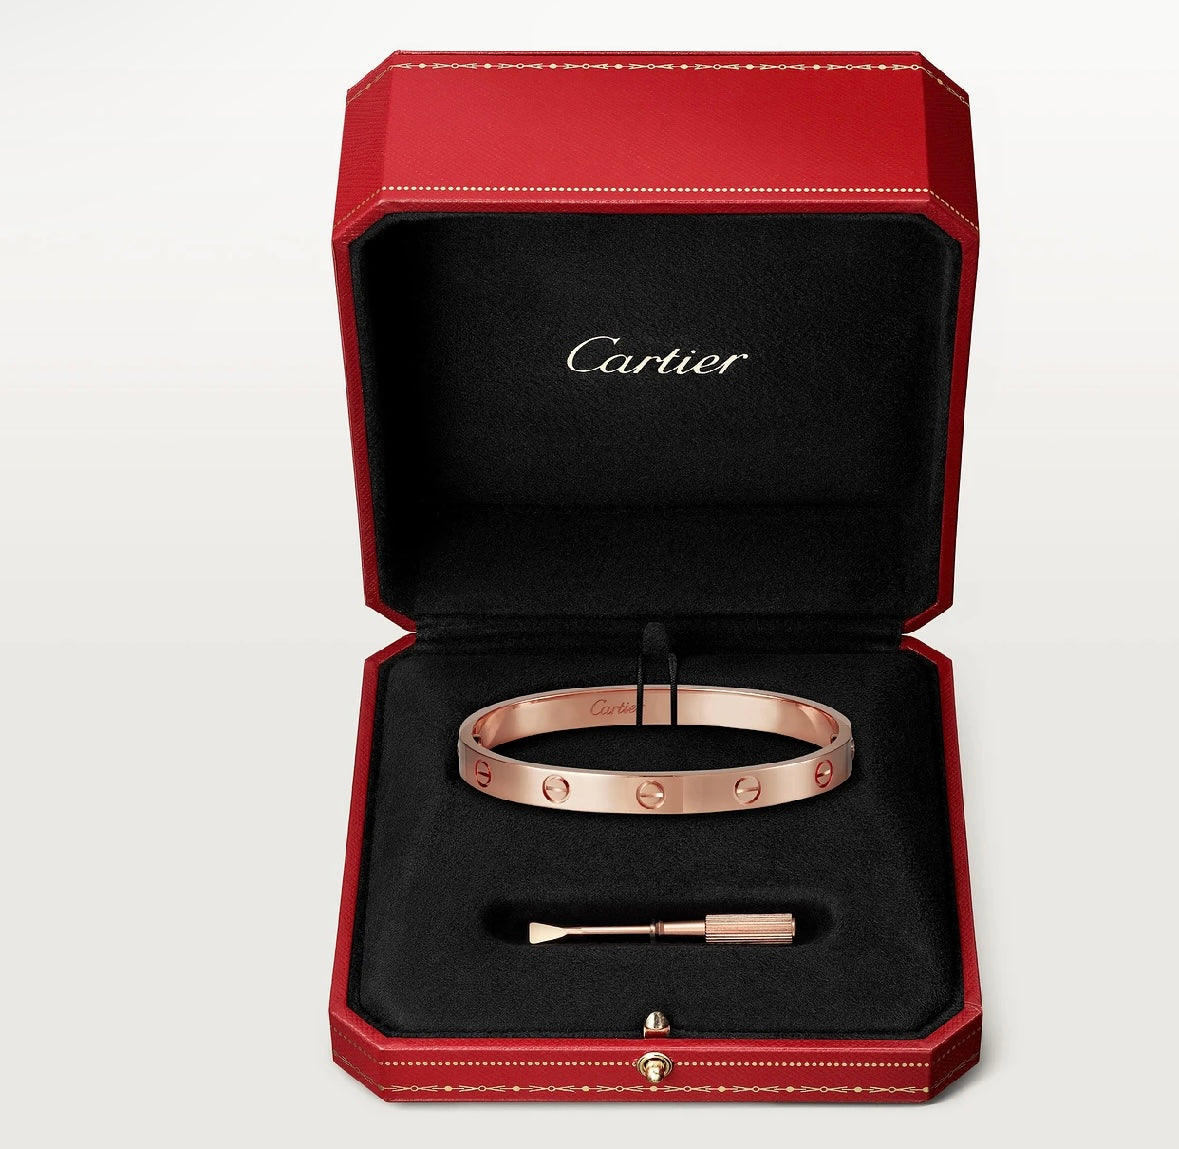 Cartier Love Bracelet “Rose Gold”